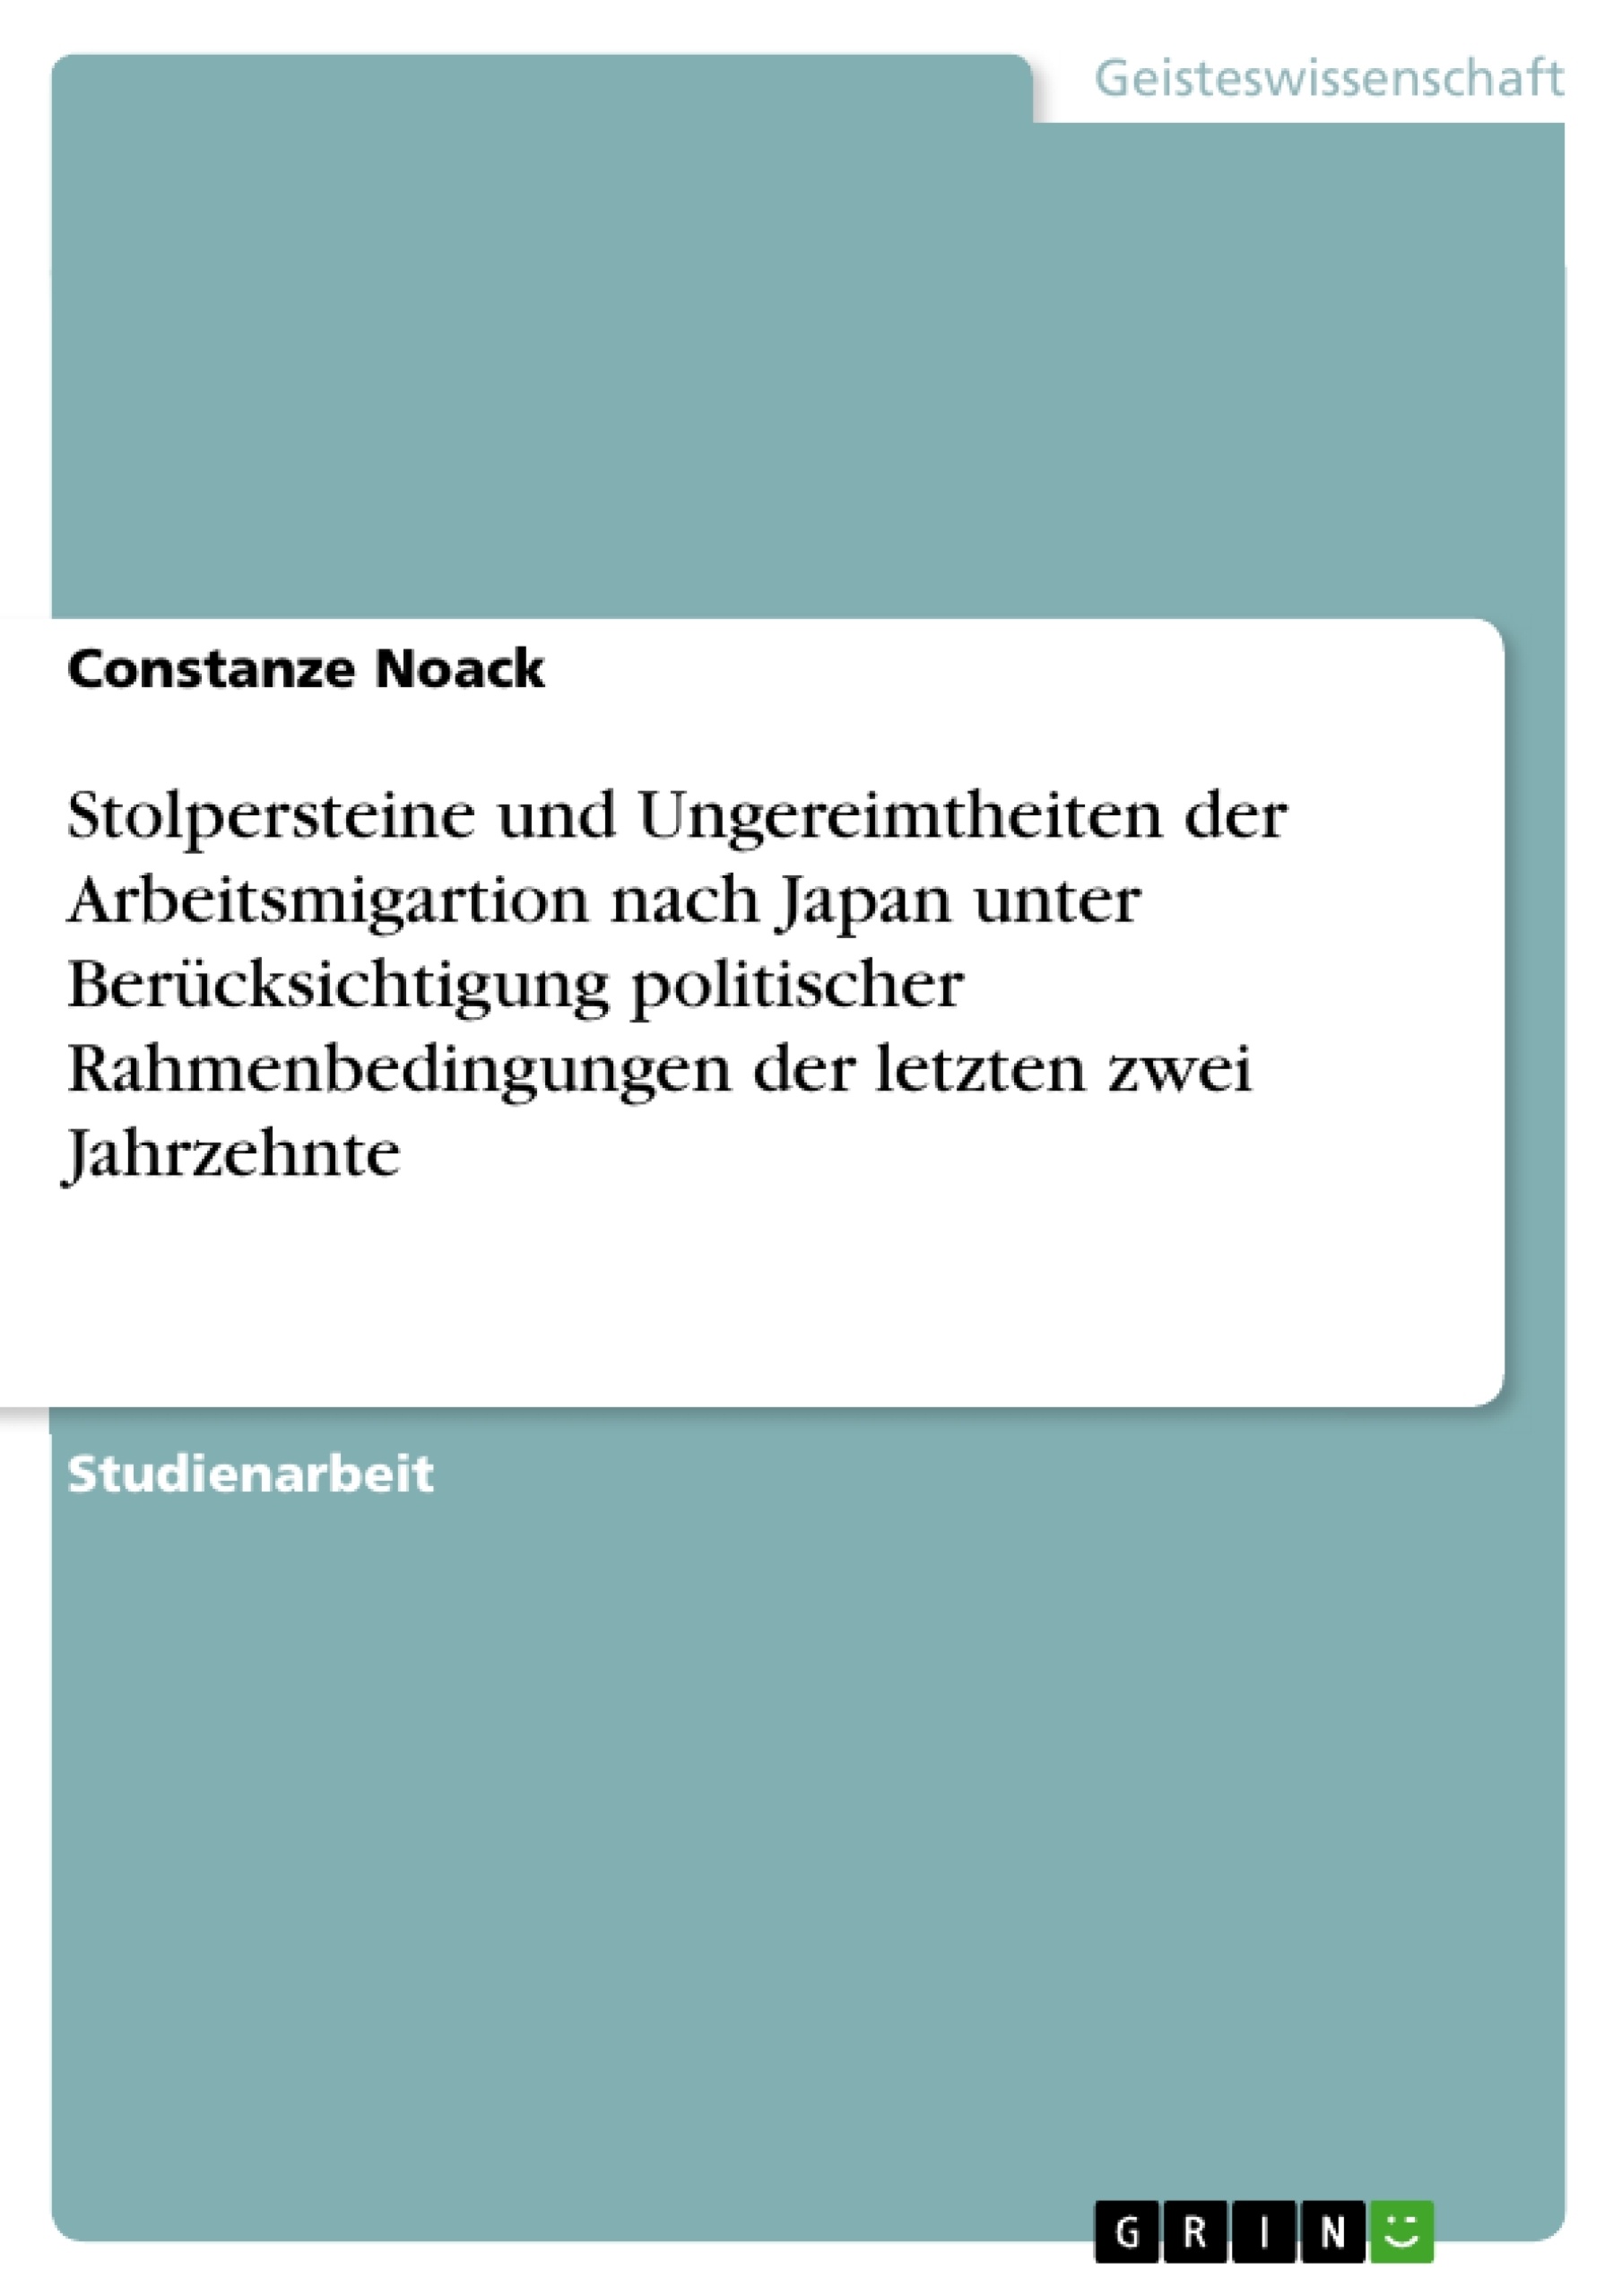 Titel: Stolpersteine und Ungereimtheiten der Arbeitsmigartion nach Japan unter Berücksichtigung politischer Rahmenbedingungen der letzten zwei Jahrzehnte